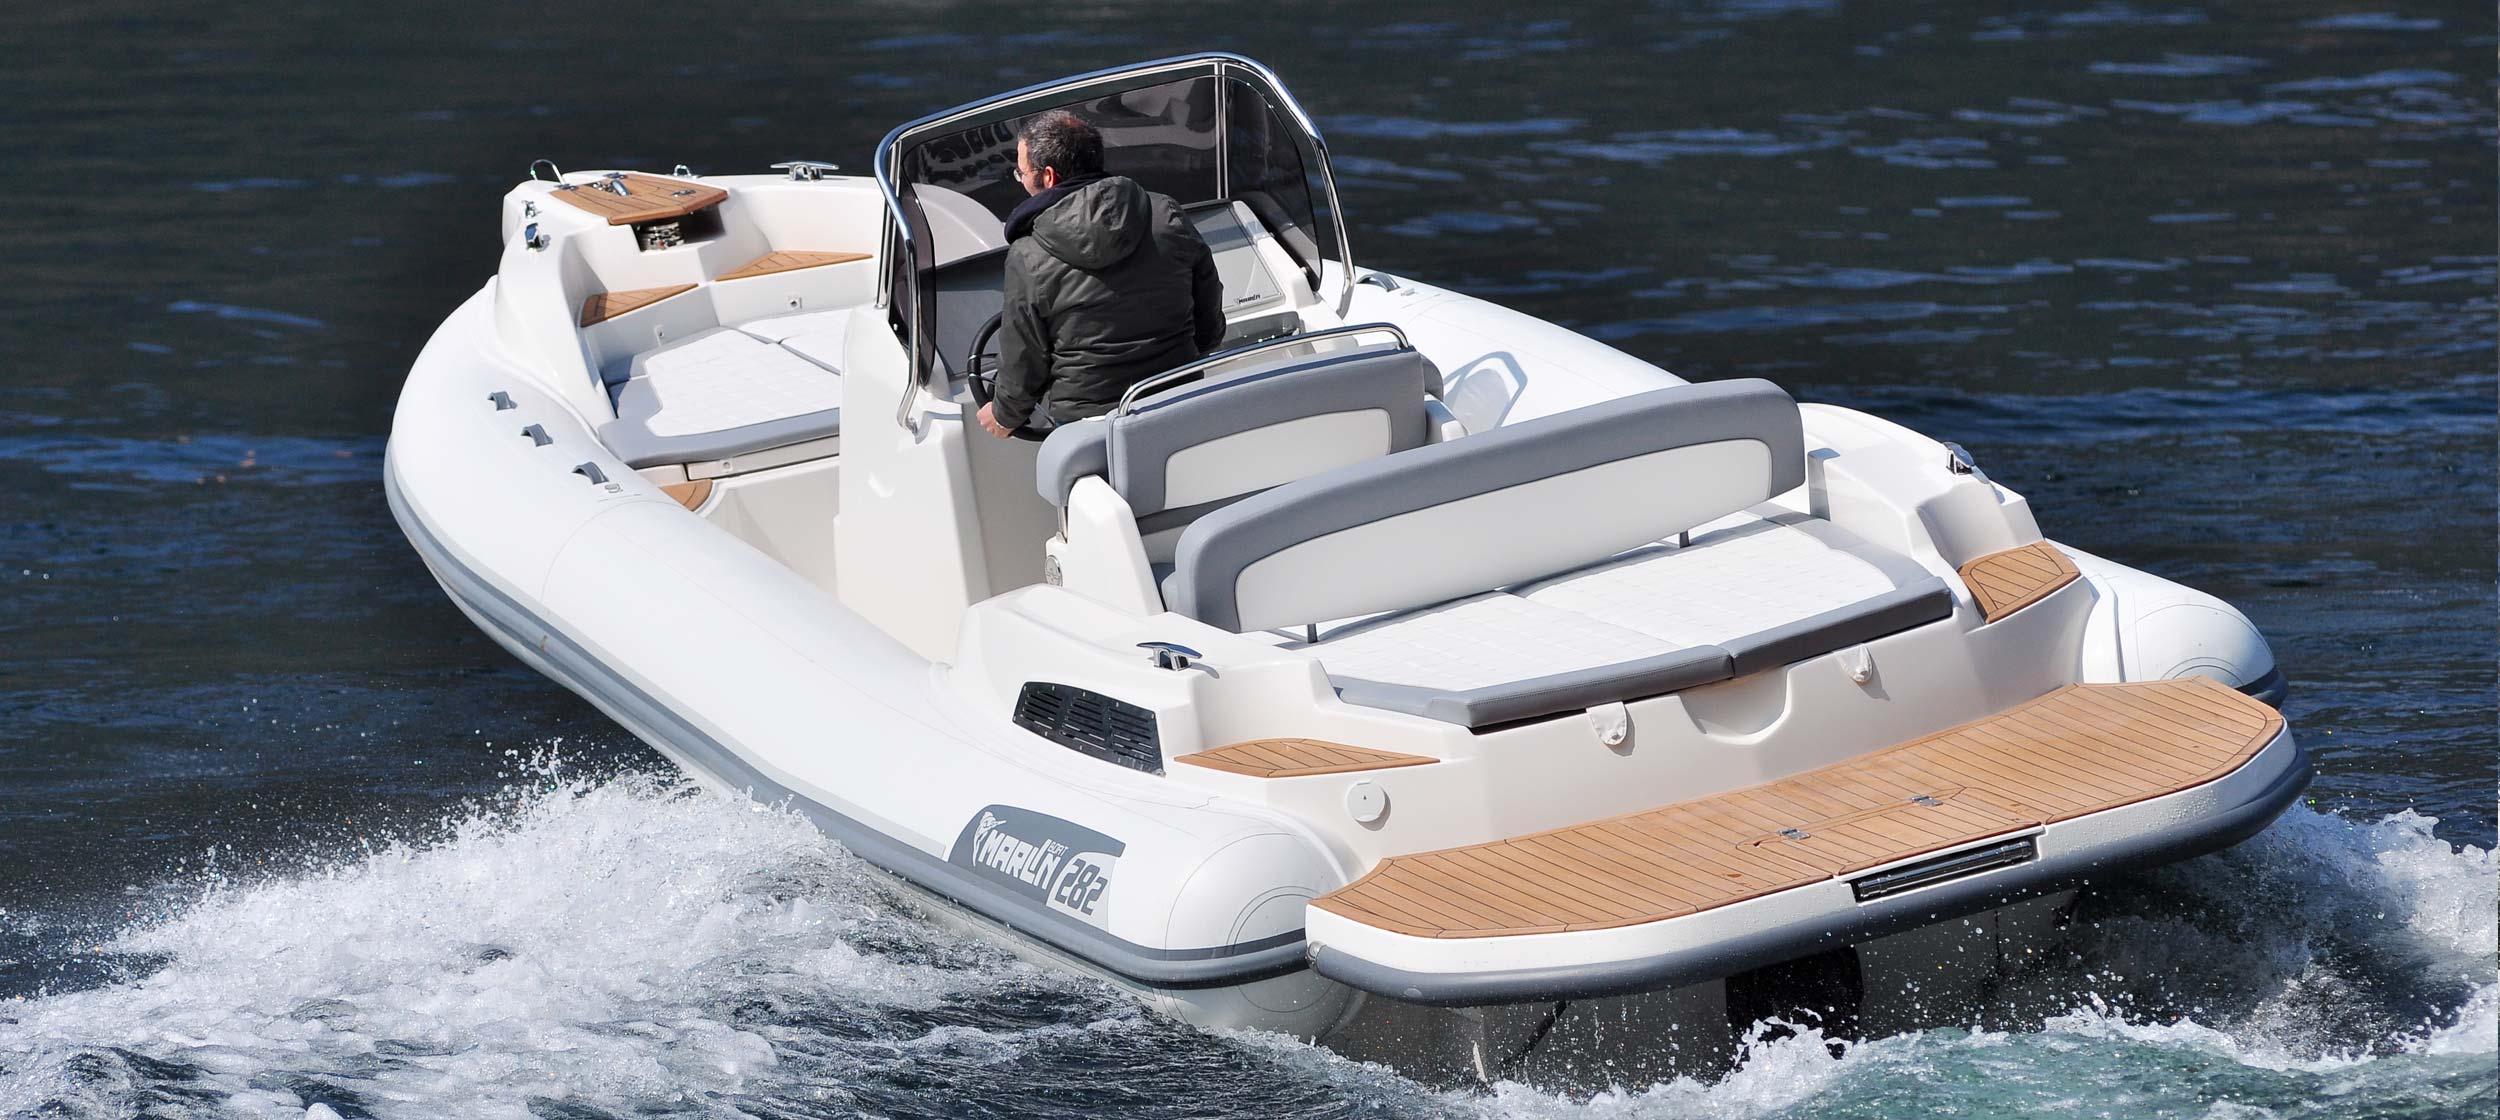 Marlin Boat - Inboard model  282